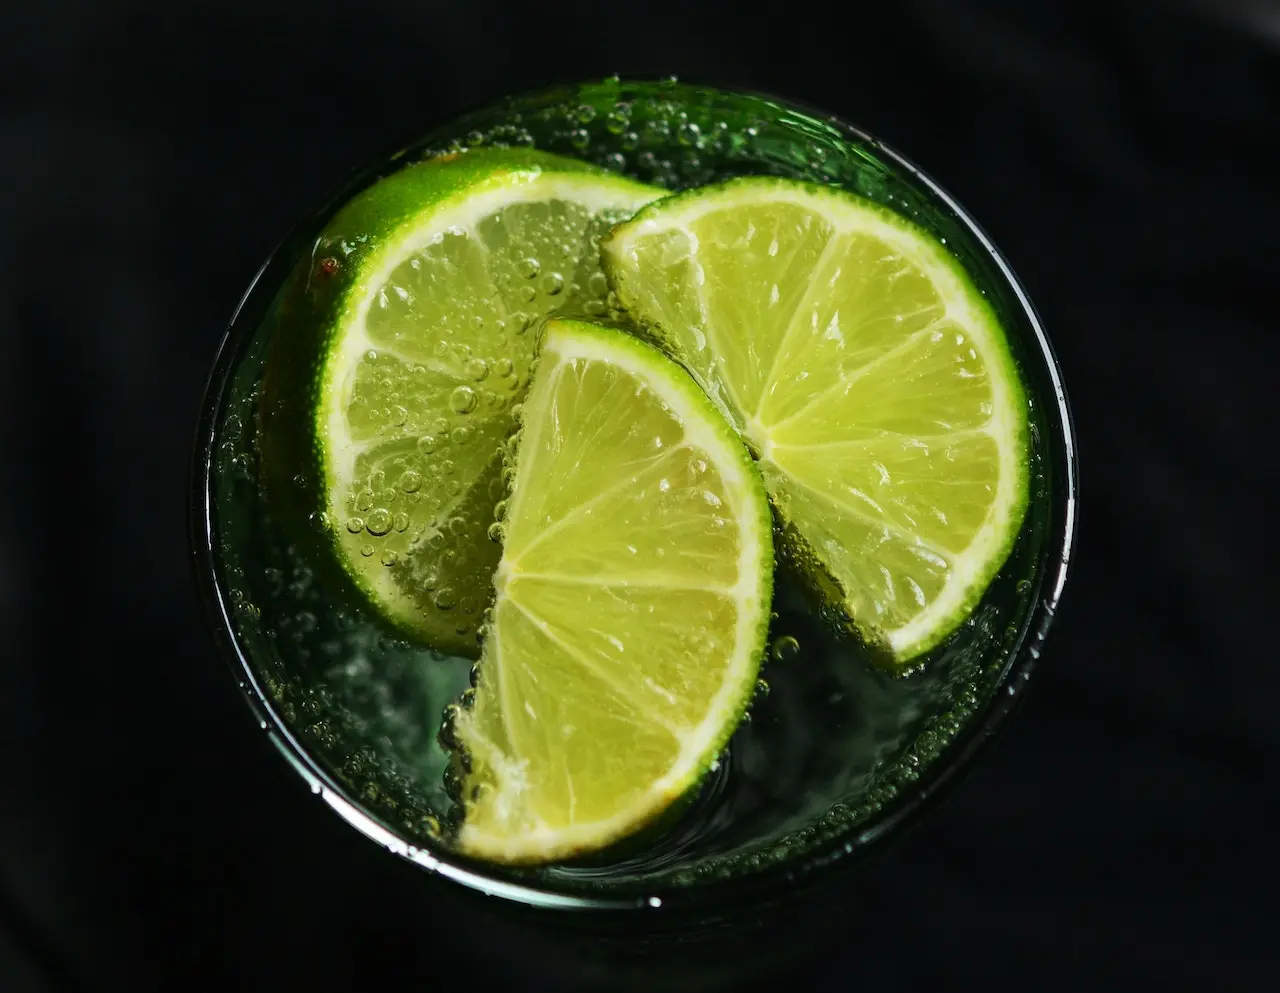 لیمو هایی سبزی که در داخل لیوان مشکی قرار دارد و آب گازدار نیز در آن قرار دارد